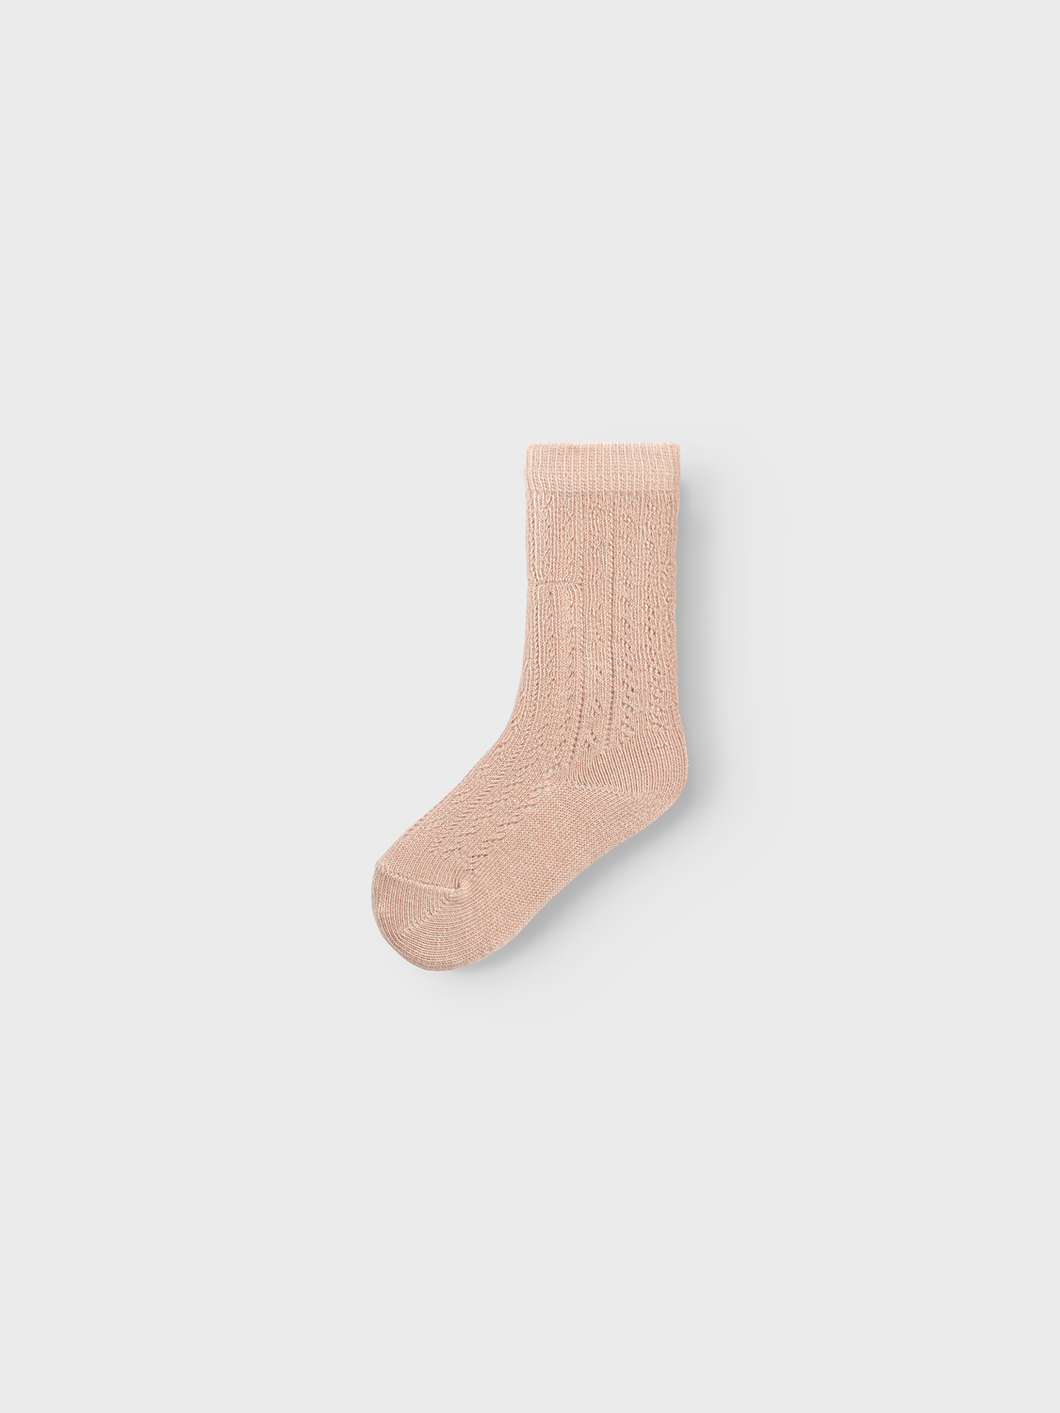 NBFTARA Socks - Nougat